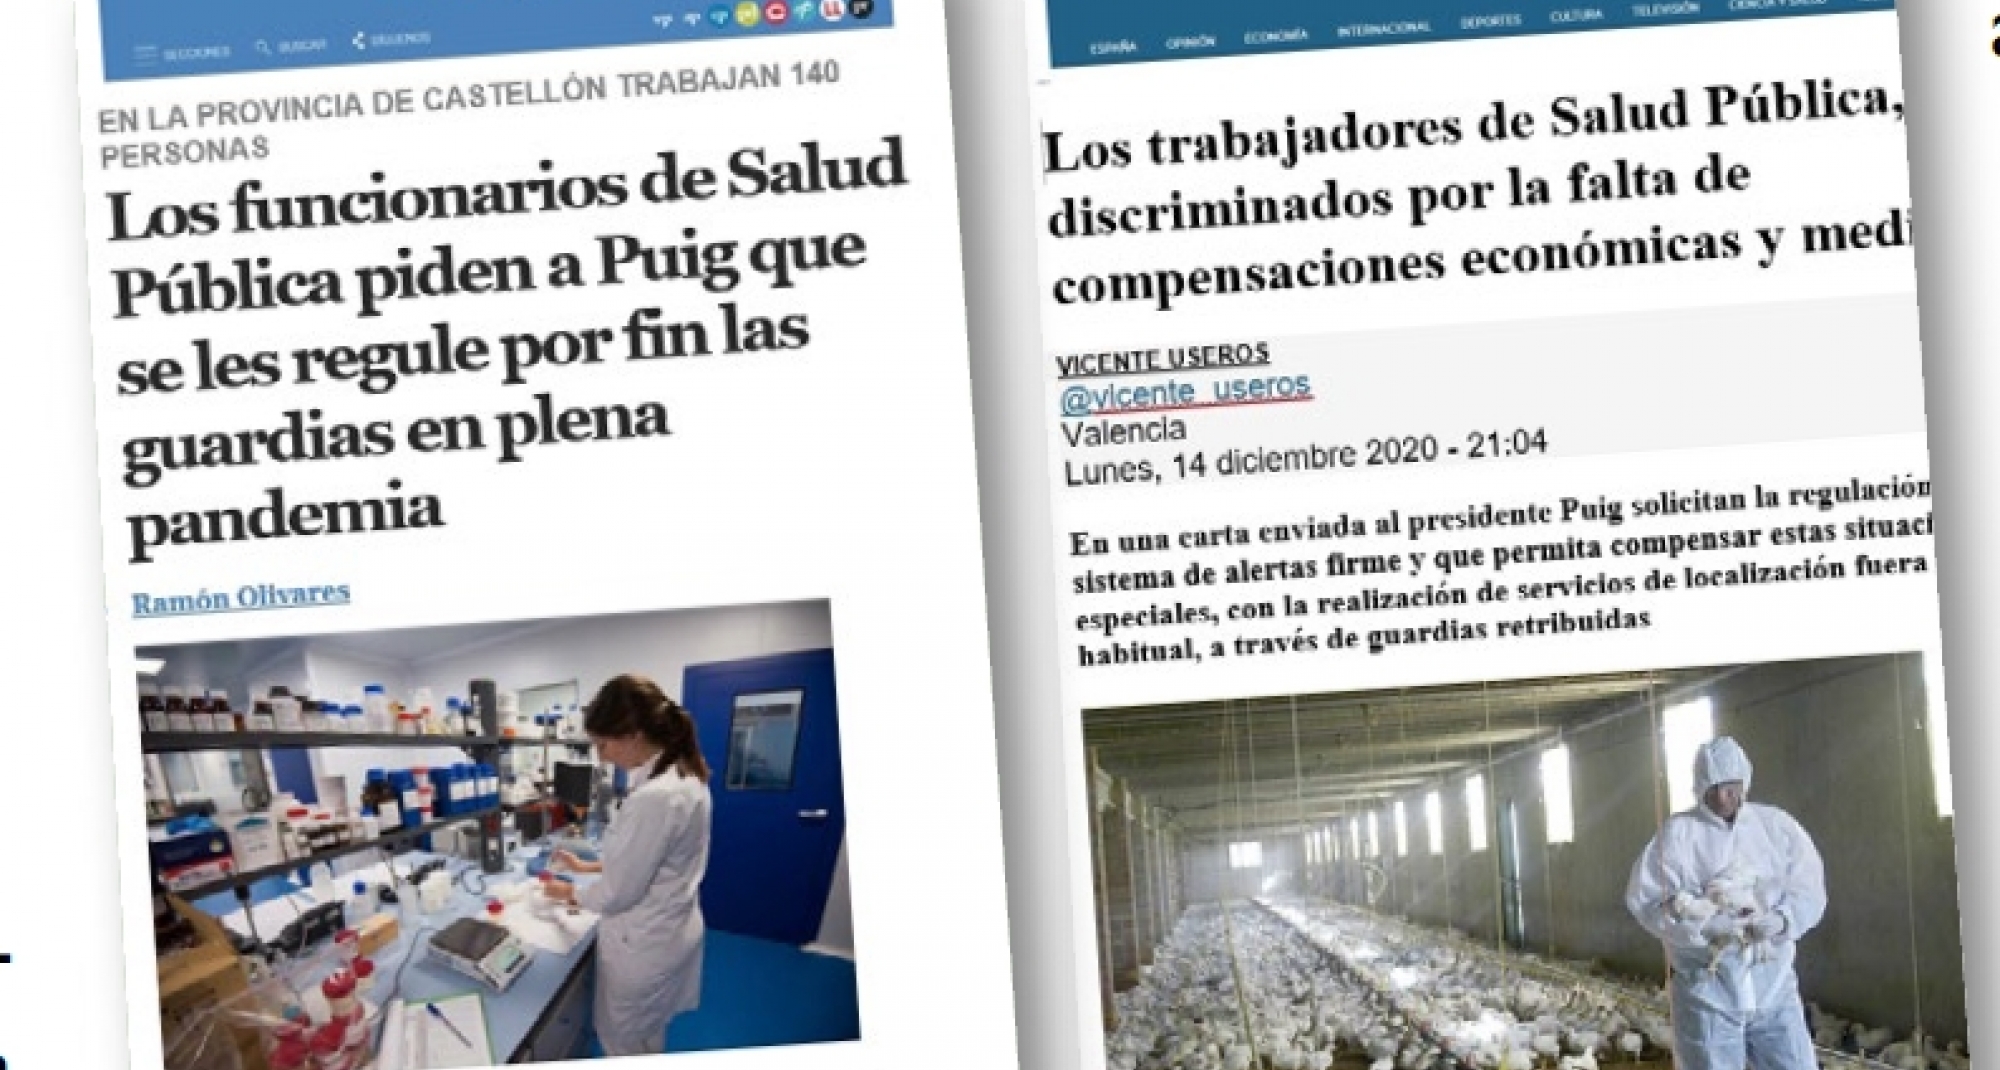 La prensa se hace eco de la discriminación de los profesionales valencianos de Salud Pública